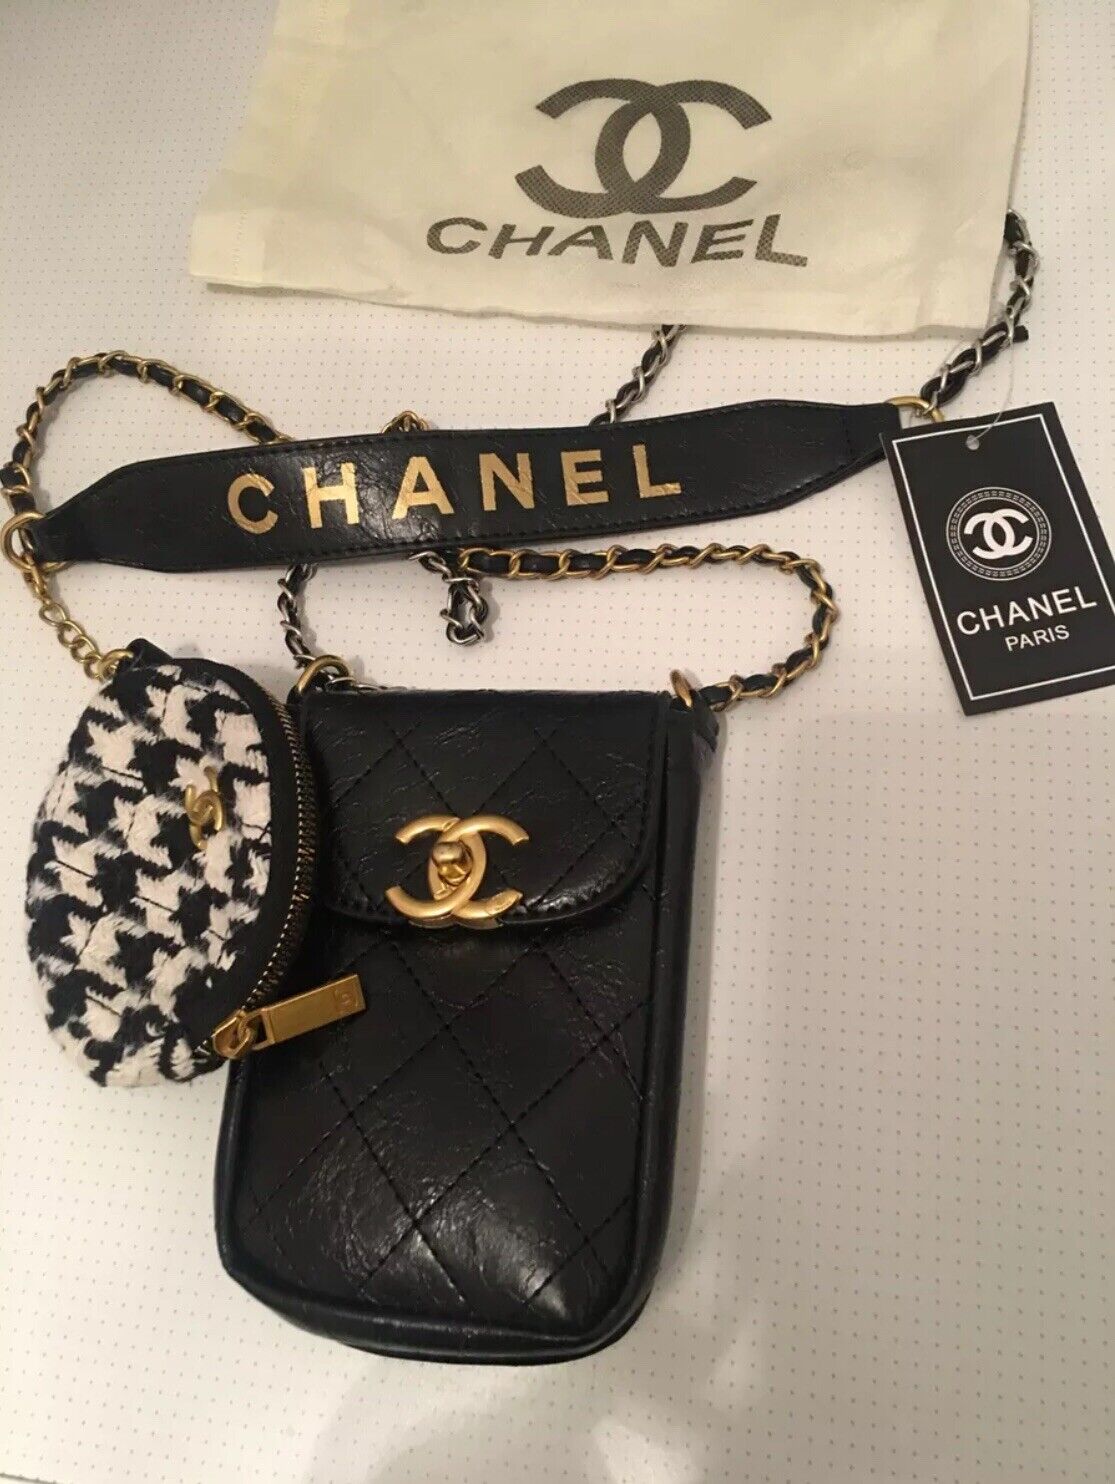 Купить Chanel Makeup / Beaute Vip Gift Tasche -Handytasche на Аукцион DE из  Германии с доставкой в Россию, Украину, Казахстан